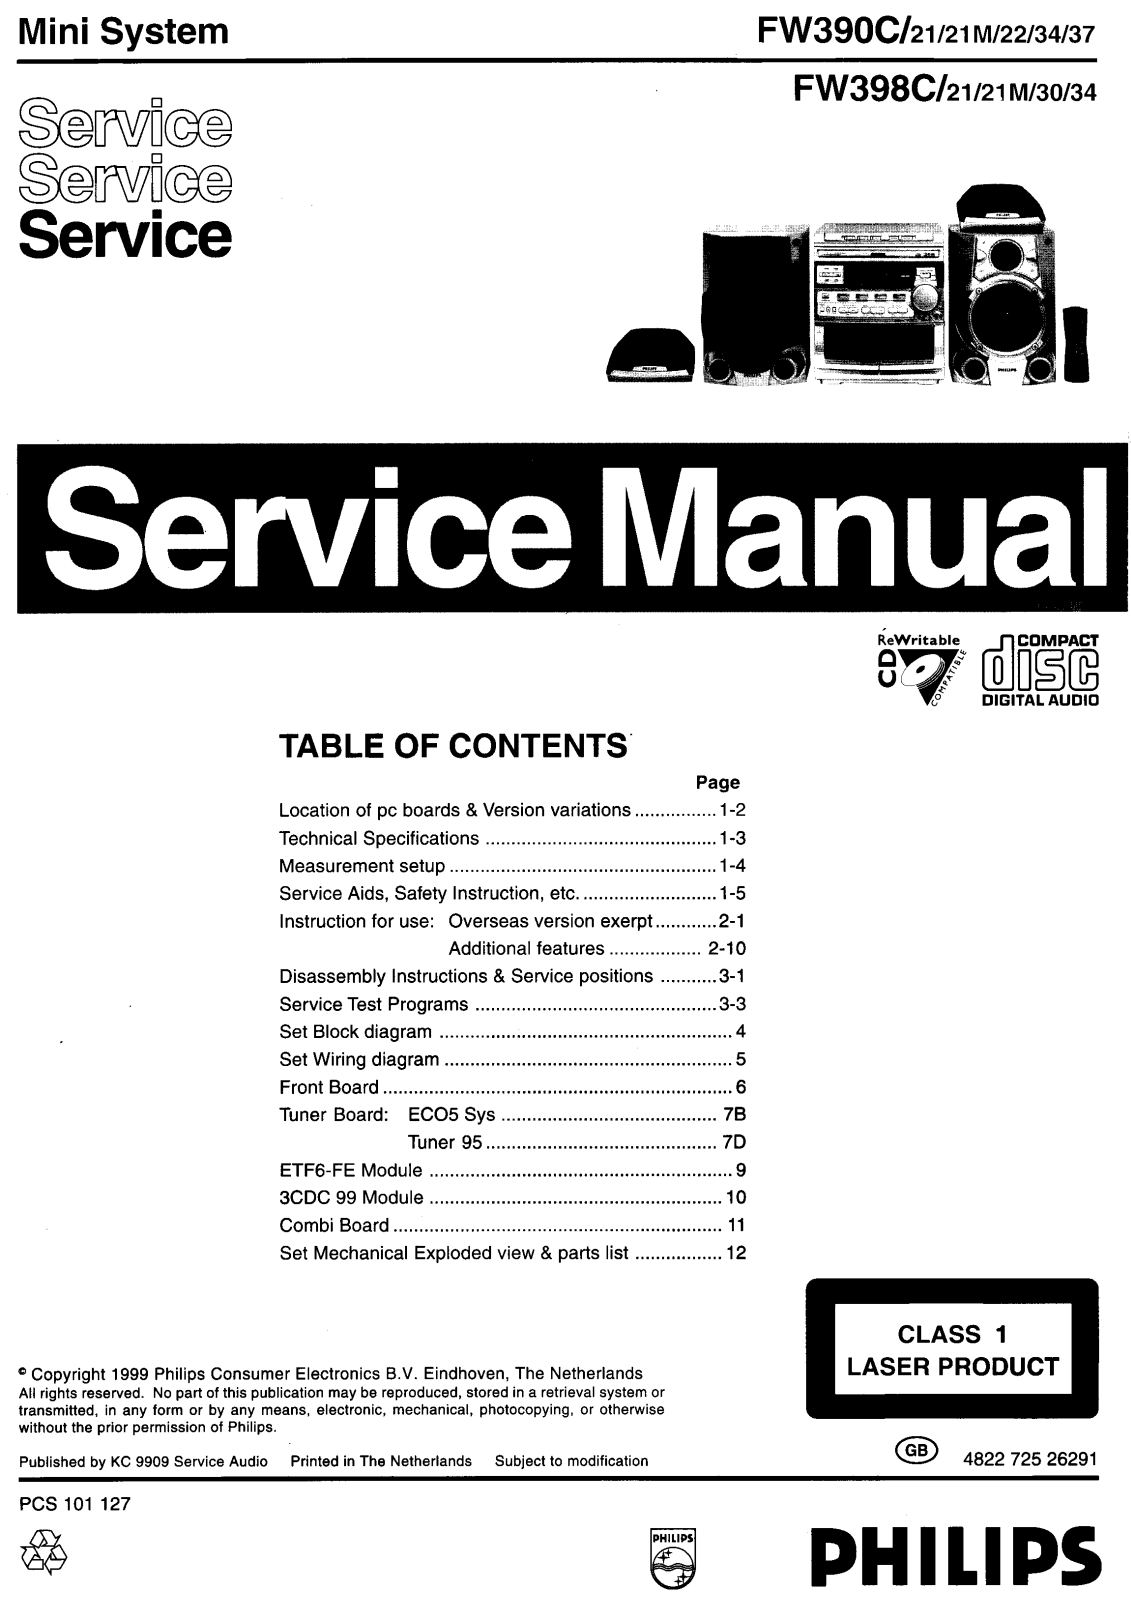 Philips FW-390-C, FW-398-C Service manual